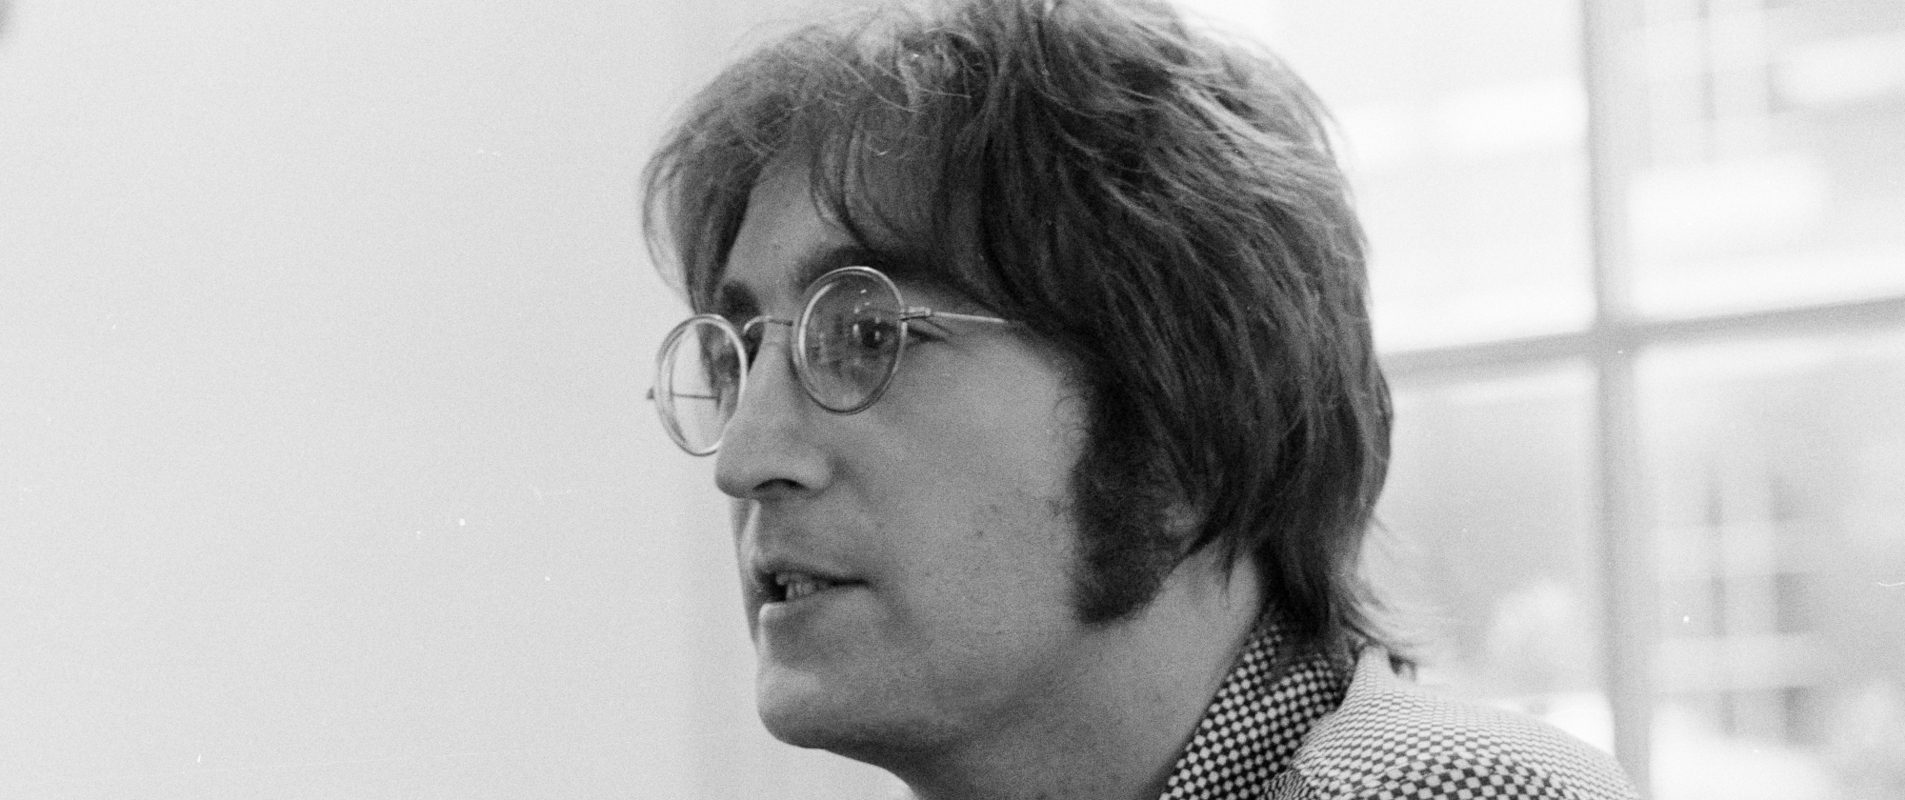 Top 10 John Lennon Songs